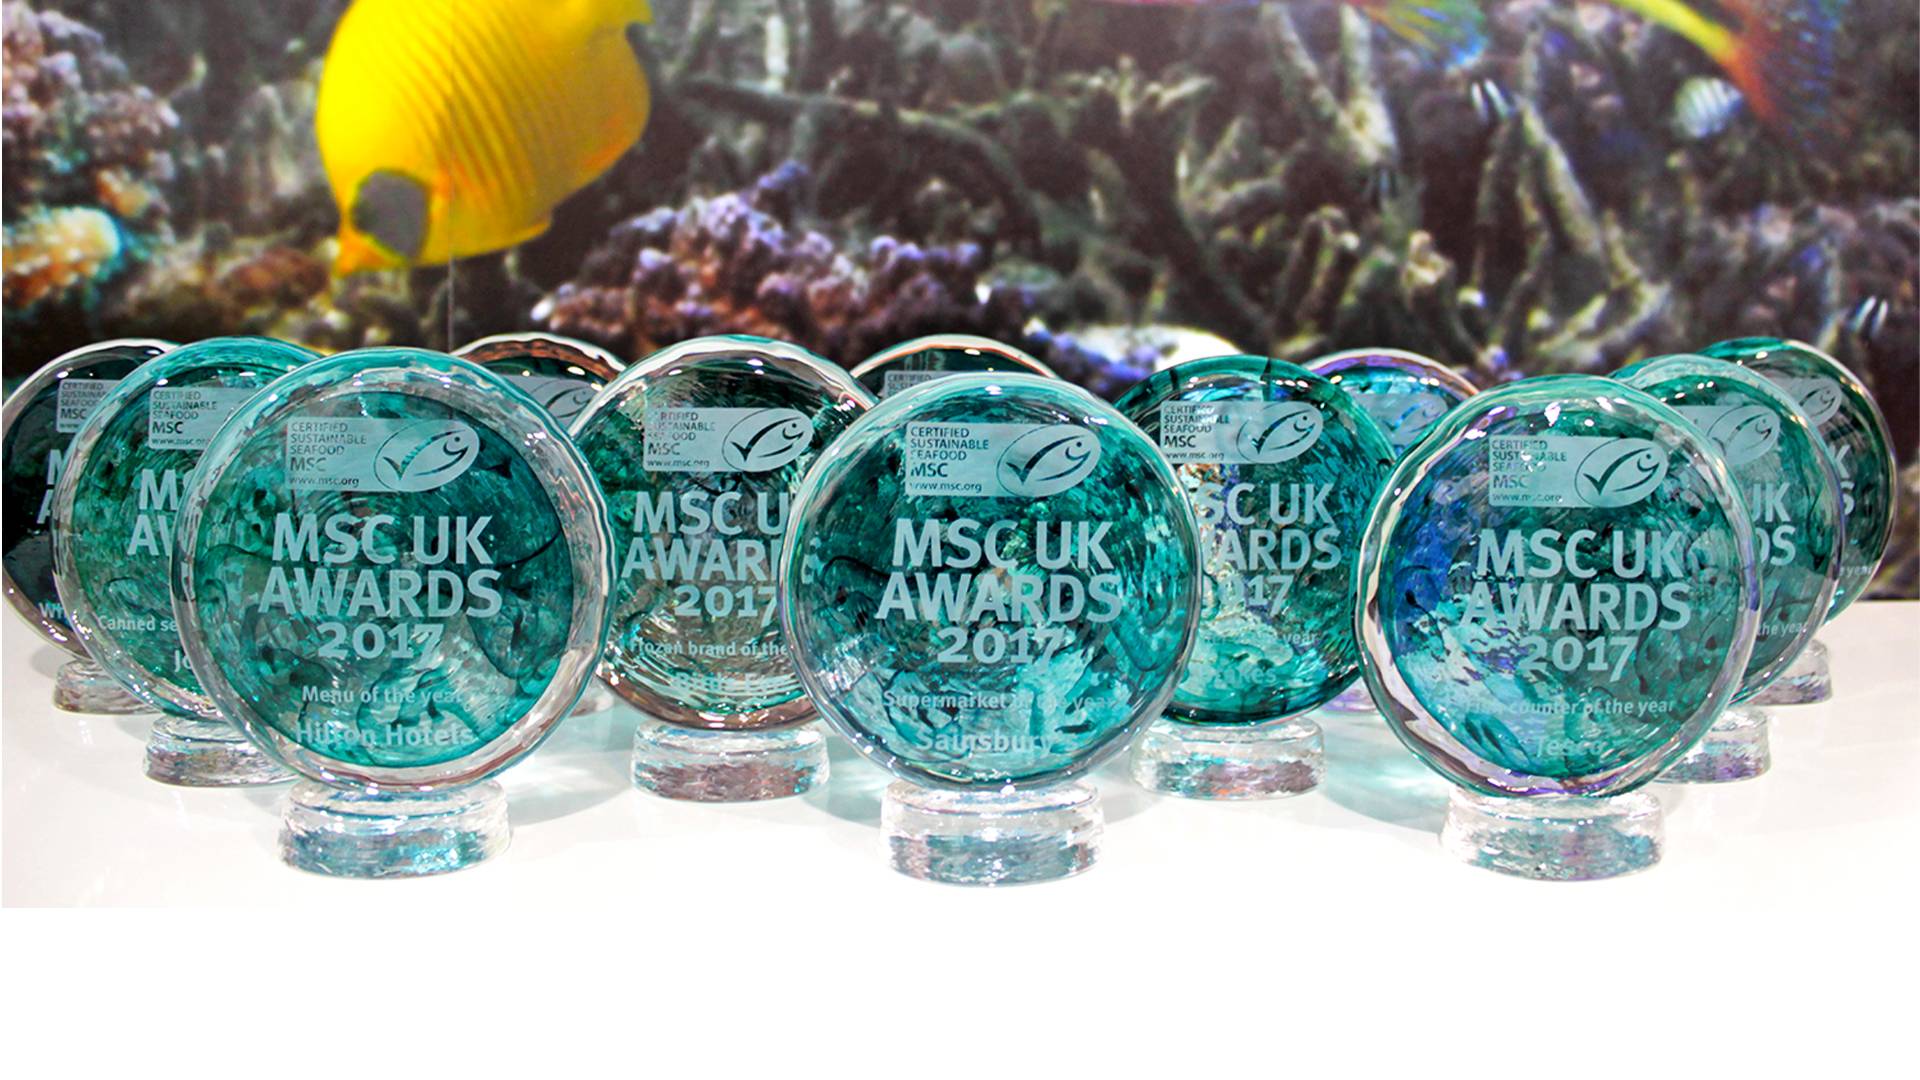 msc-uk-awards-2017-marine-stewardship-council-marine-stewardship